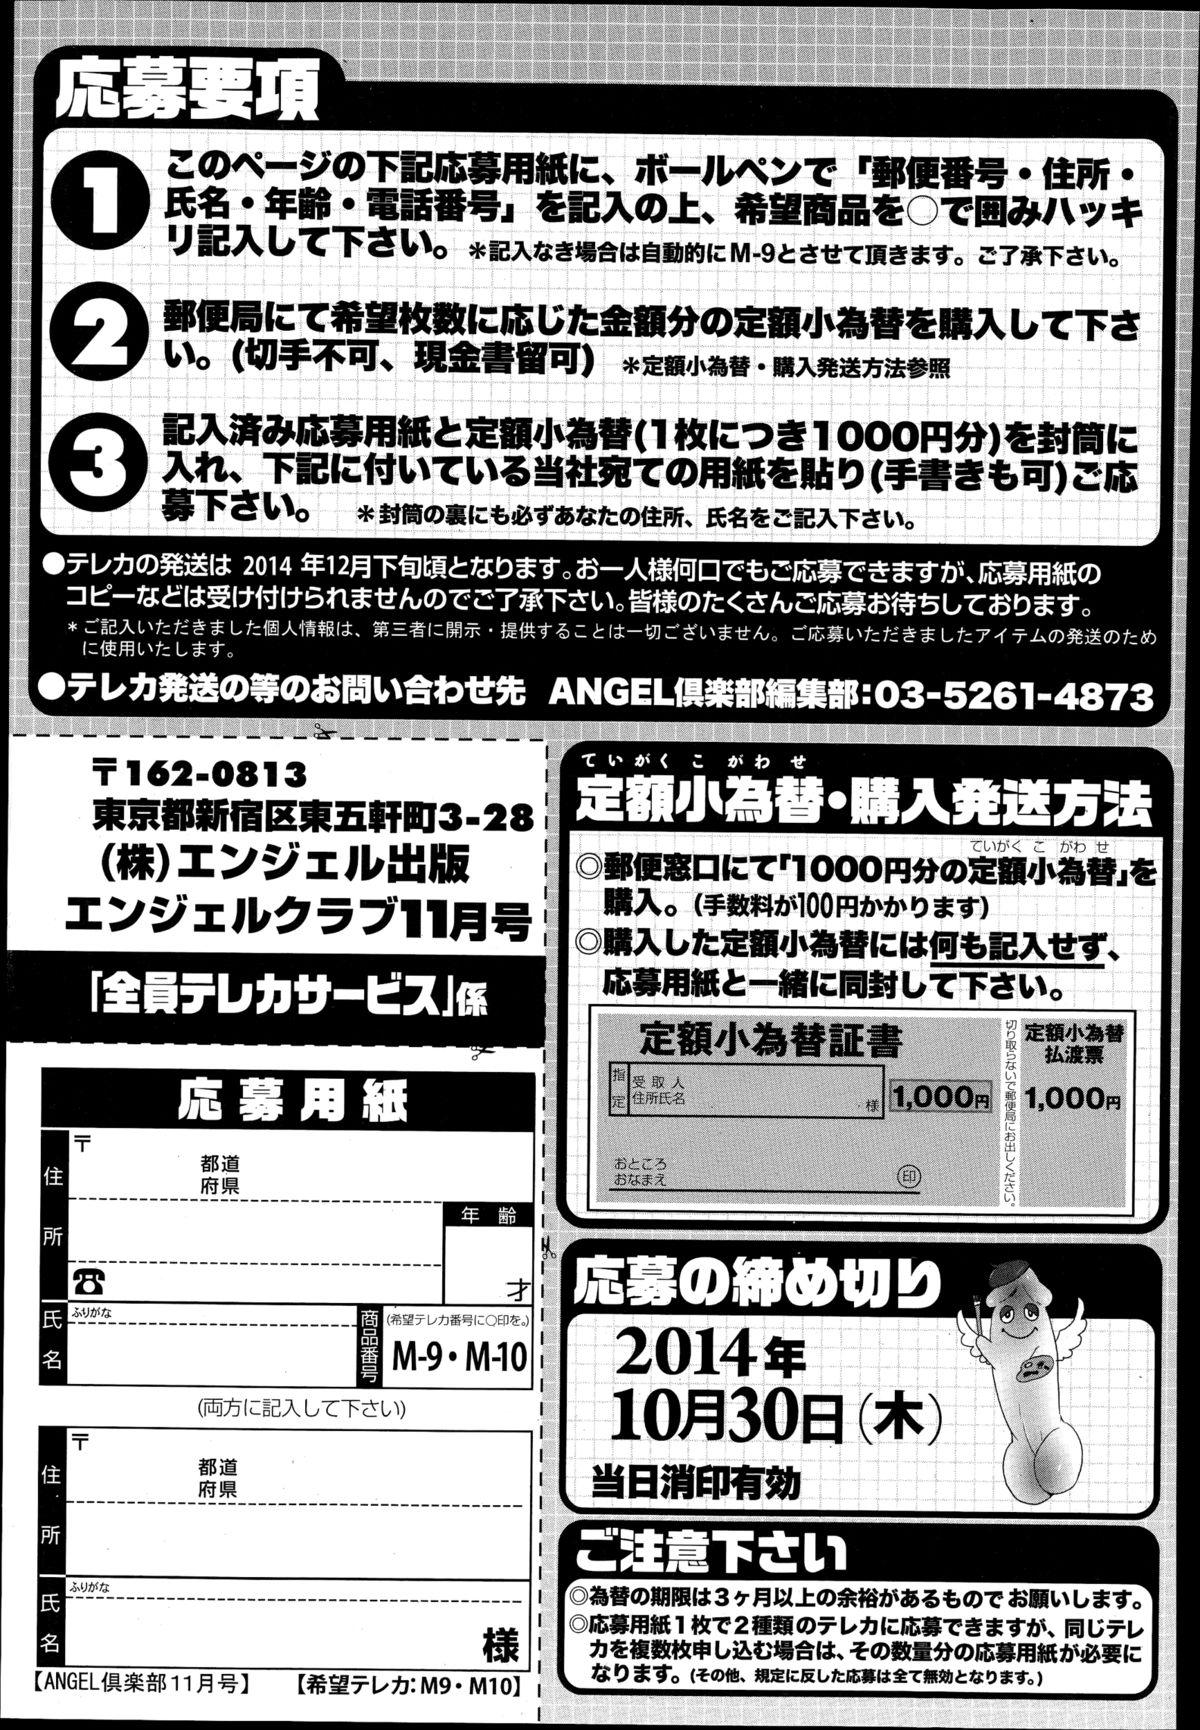 ANGEL Club 2014-11 206